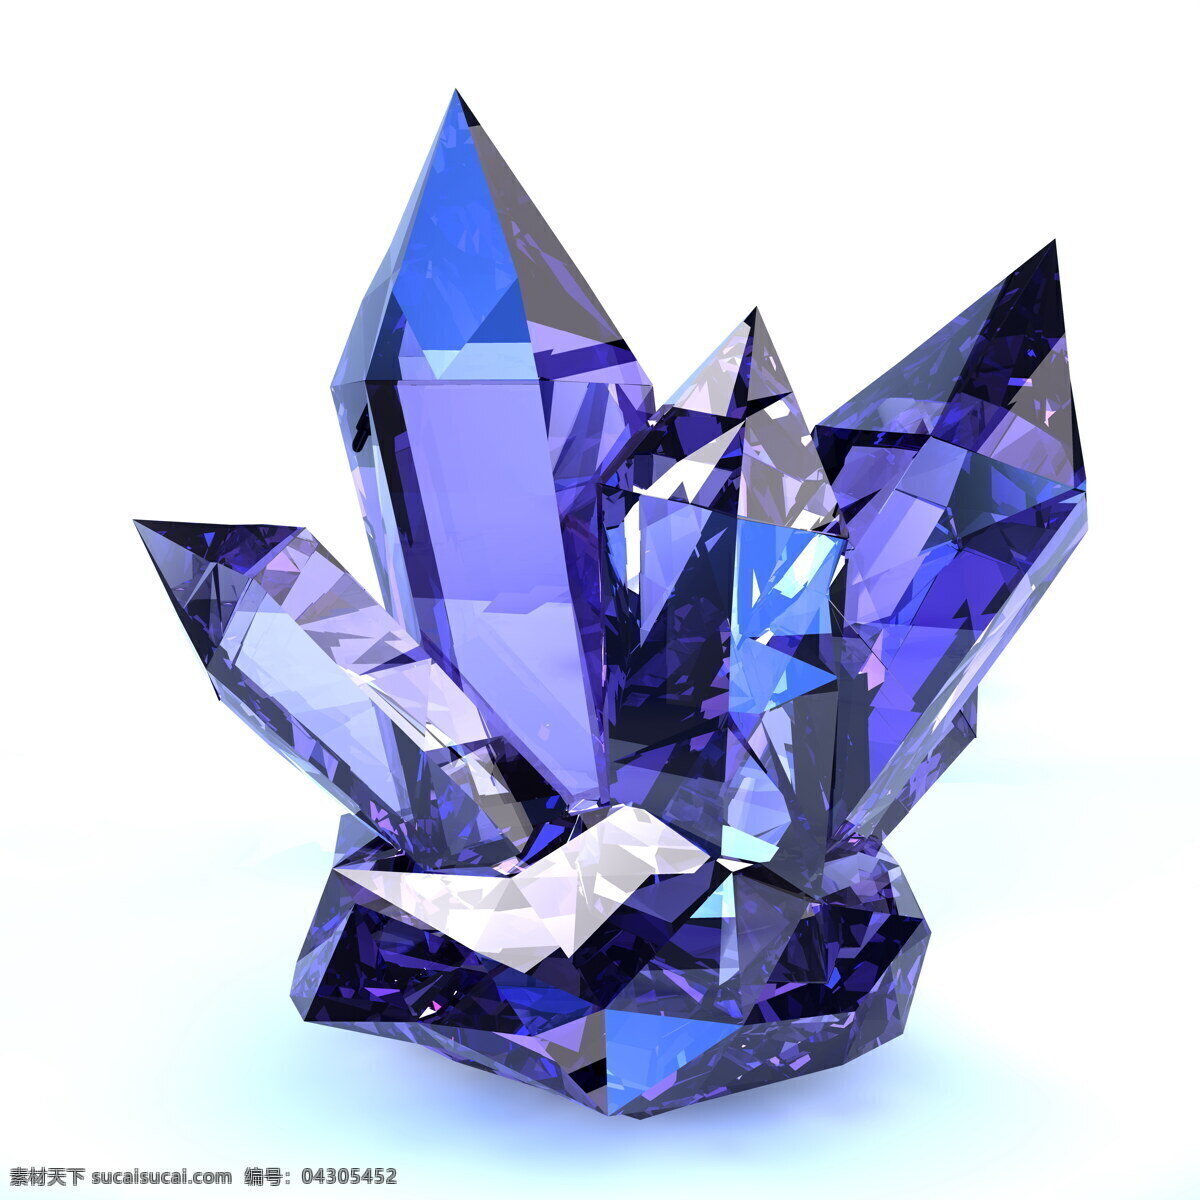 紫色水晶石 矿石 紫色 水晶 水晶石 原石 生活百科 生活素材